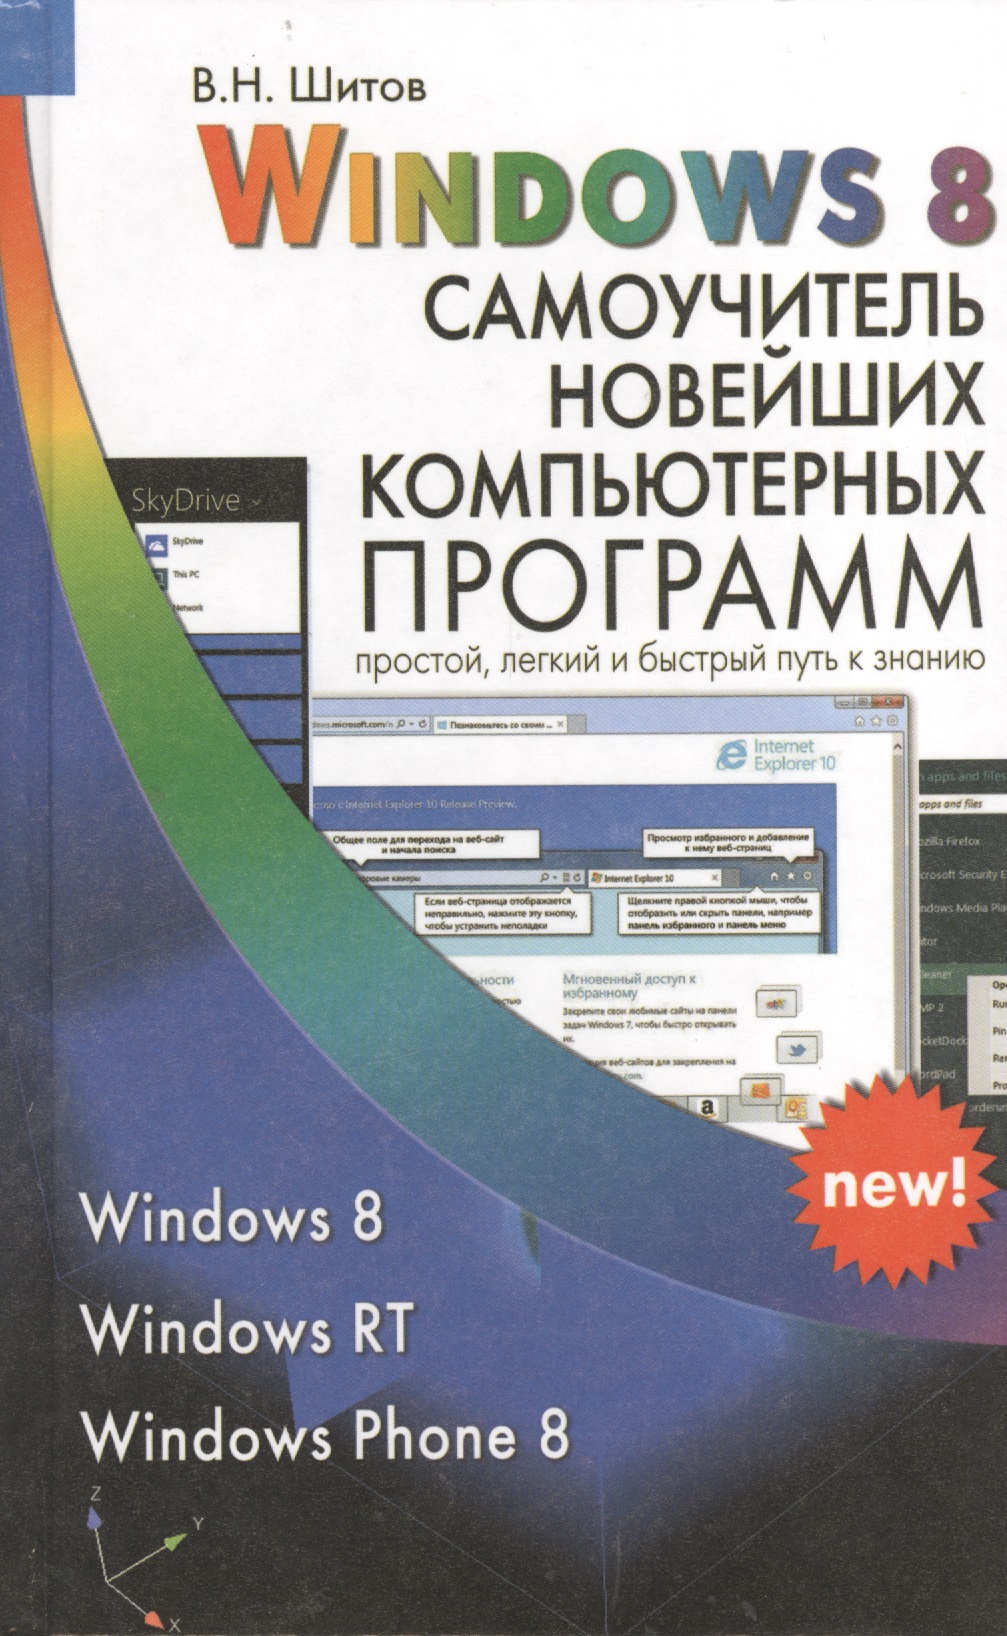 Шитов Виктор Николаевич Windows 8 Самоучитель новейших компьютерных программ (Шитов) шитов виктор николаевич самоучитель новейших компьютерных программ